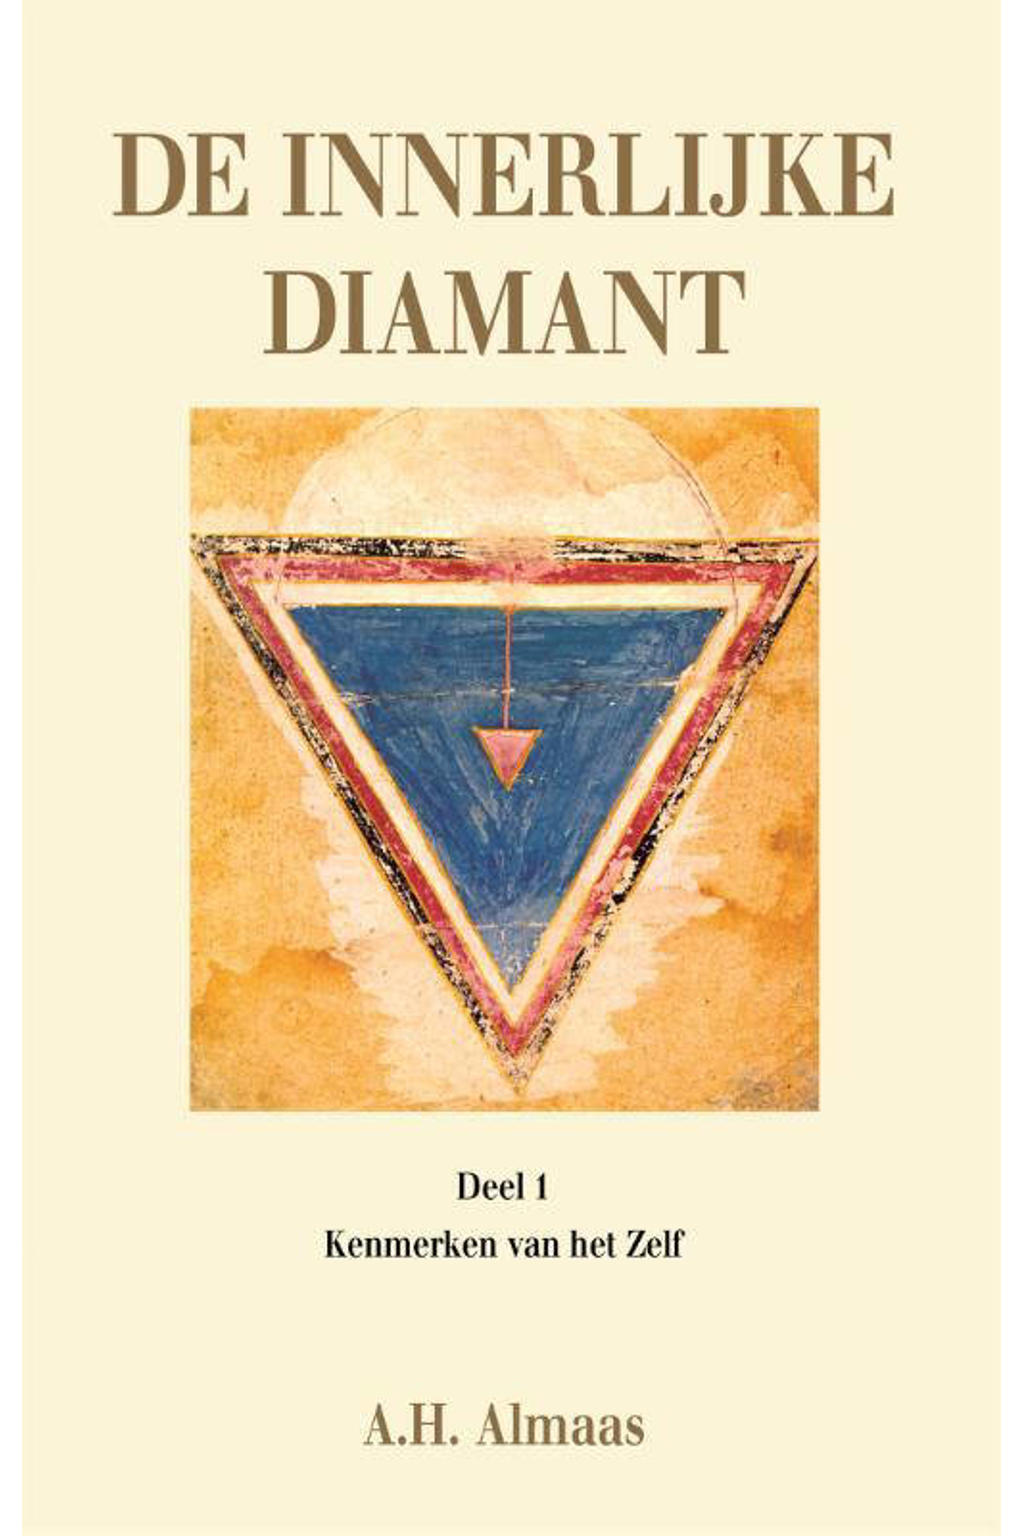 De innerlijke diamant: Kenmerken van het ware zelf 1 Kenmerken van het ware zelf - A.H. Almaas